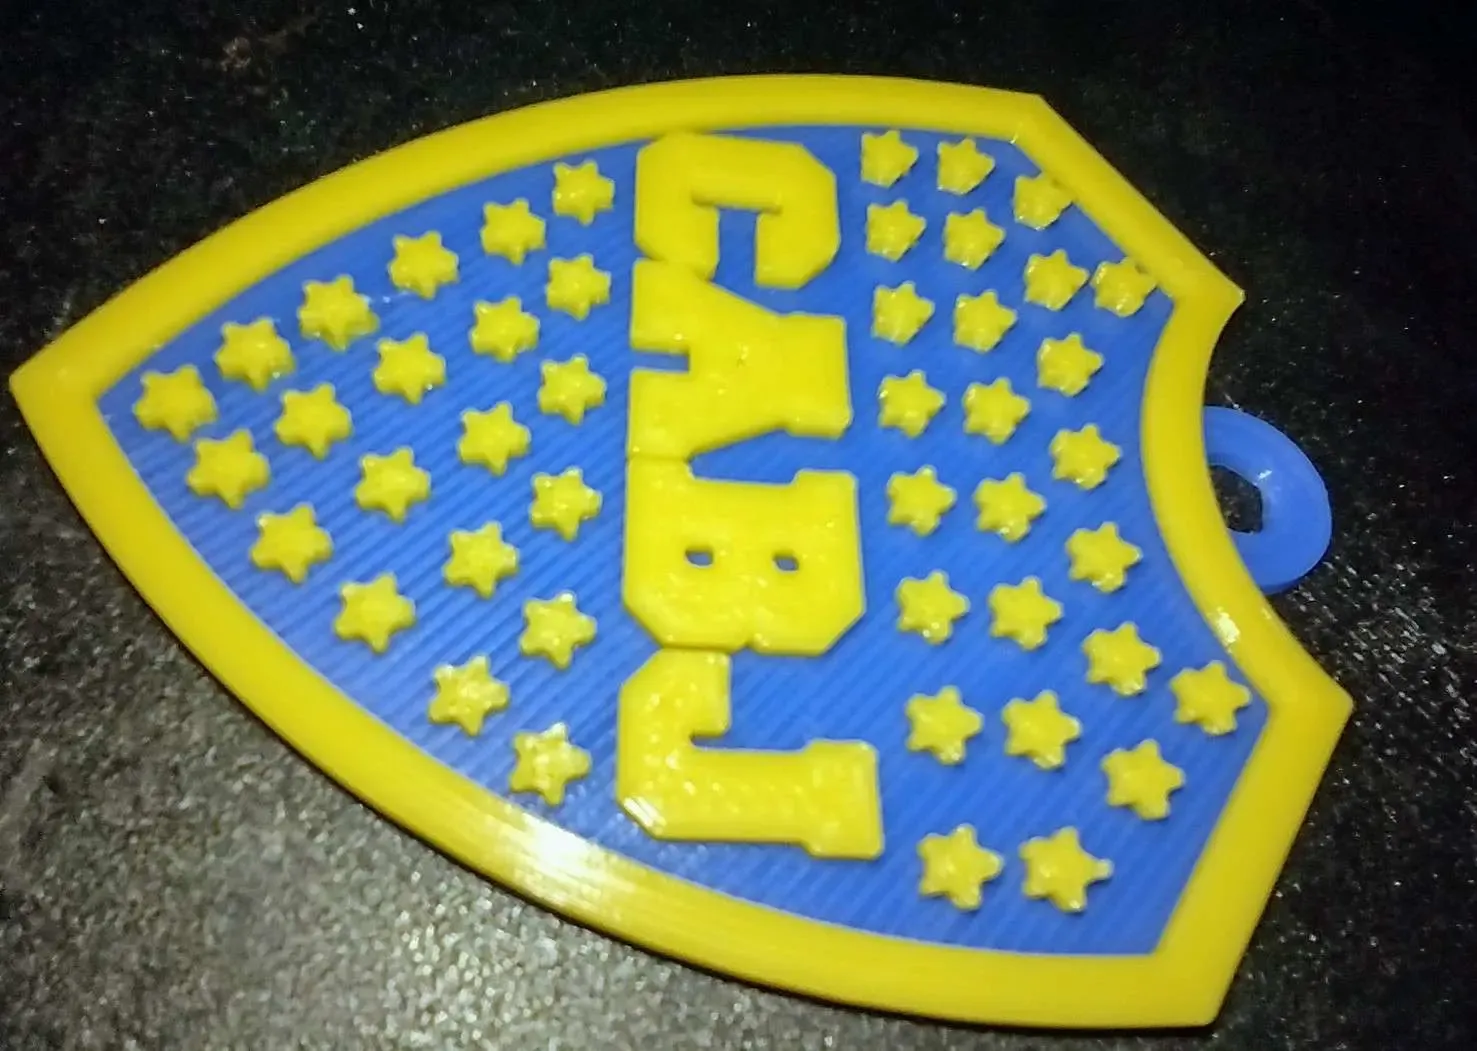 Escudo del club Talleres de Córdoba 